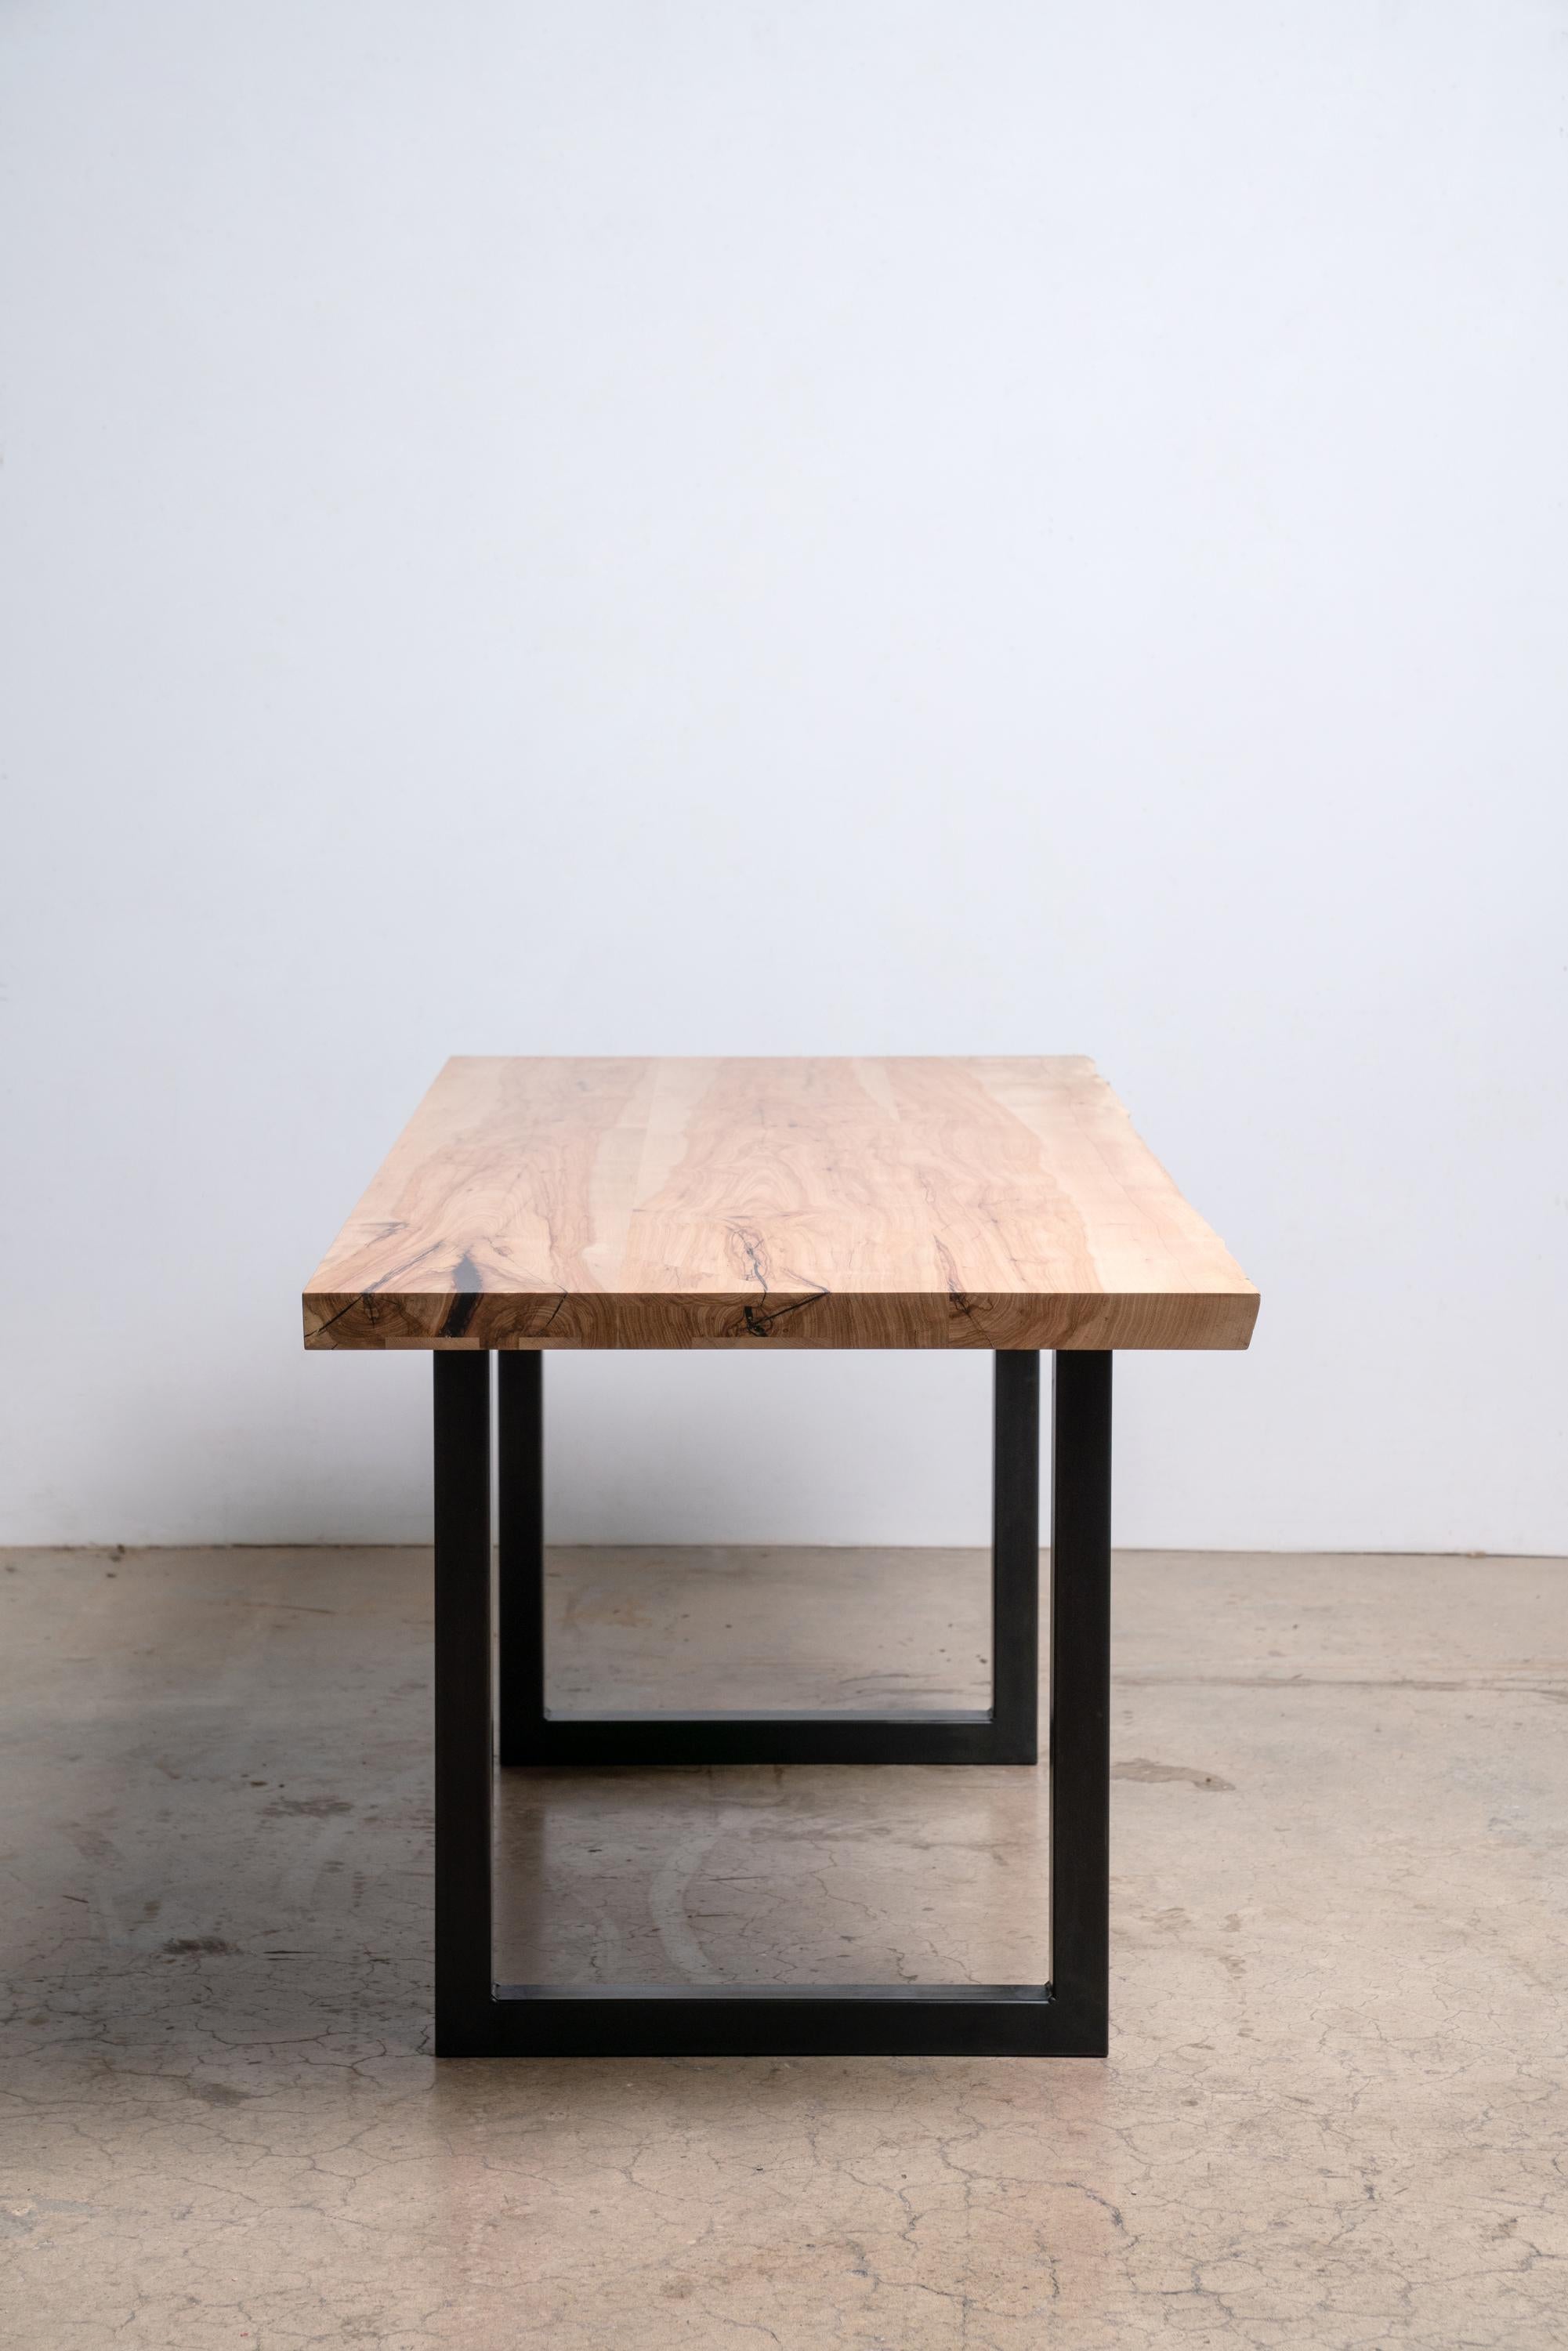 Wir nennen unseren Pekannuss-Tisch mit klarer Kante auf einem modernen, schwarzen, quadratischen Stahlgestell einen 